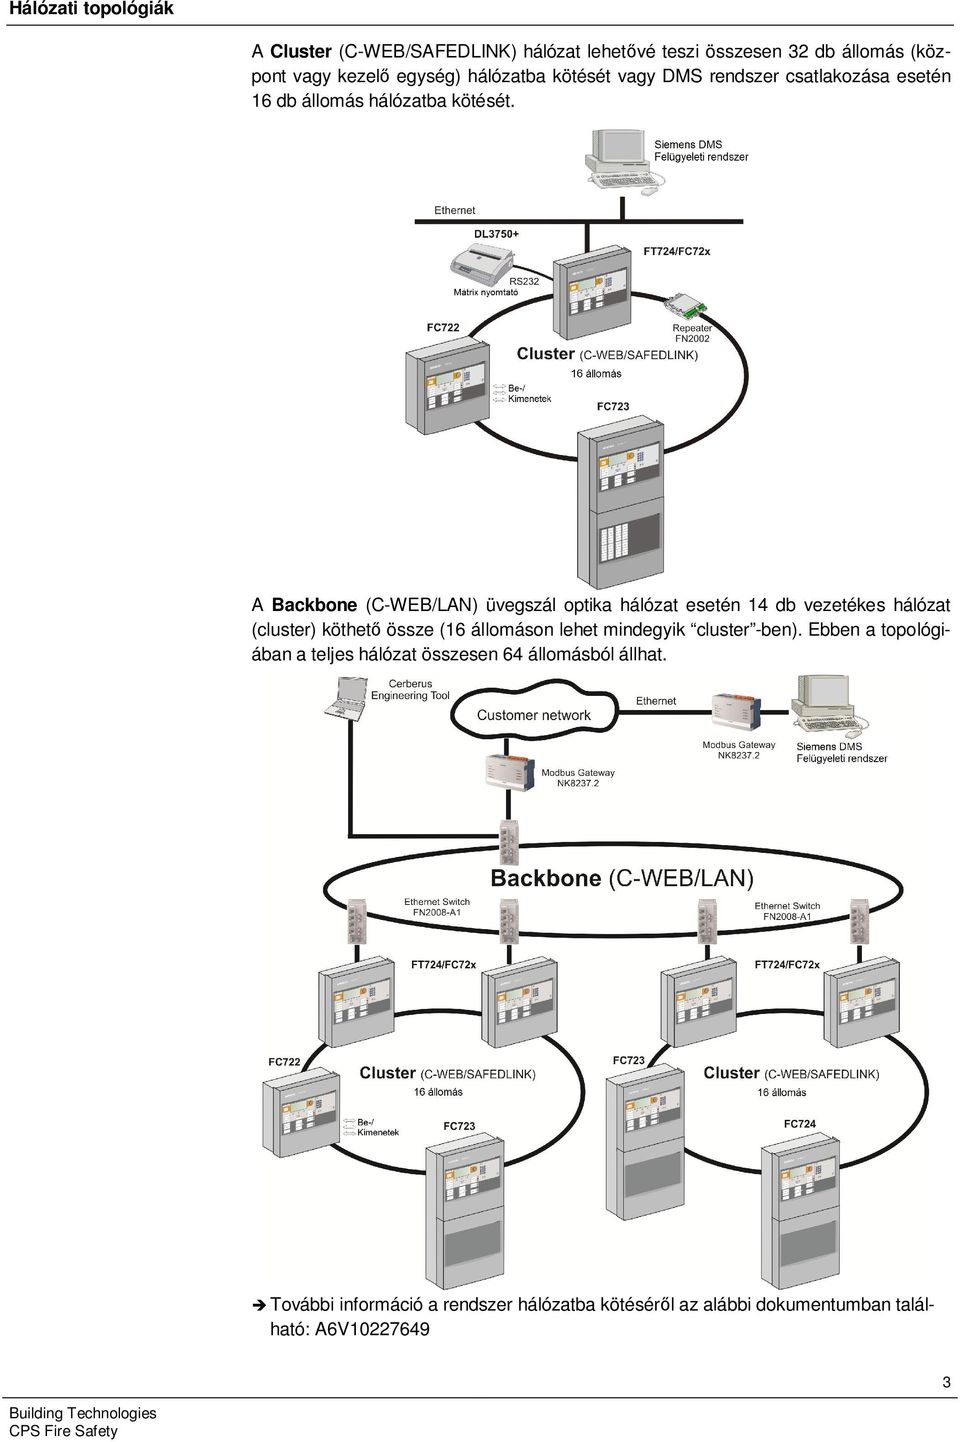 A Backbone (C-WEB/LAN) üvegszál optika hálózat esetén 14 db vezetékes hálózat (cluster) köthető össze (16 állomáson lehet mindegyik